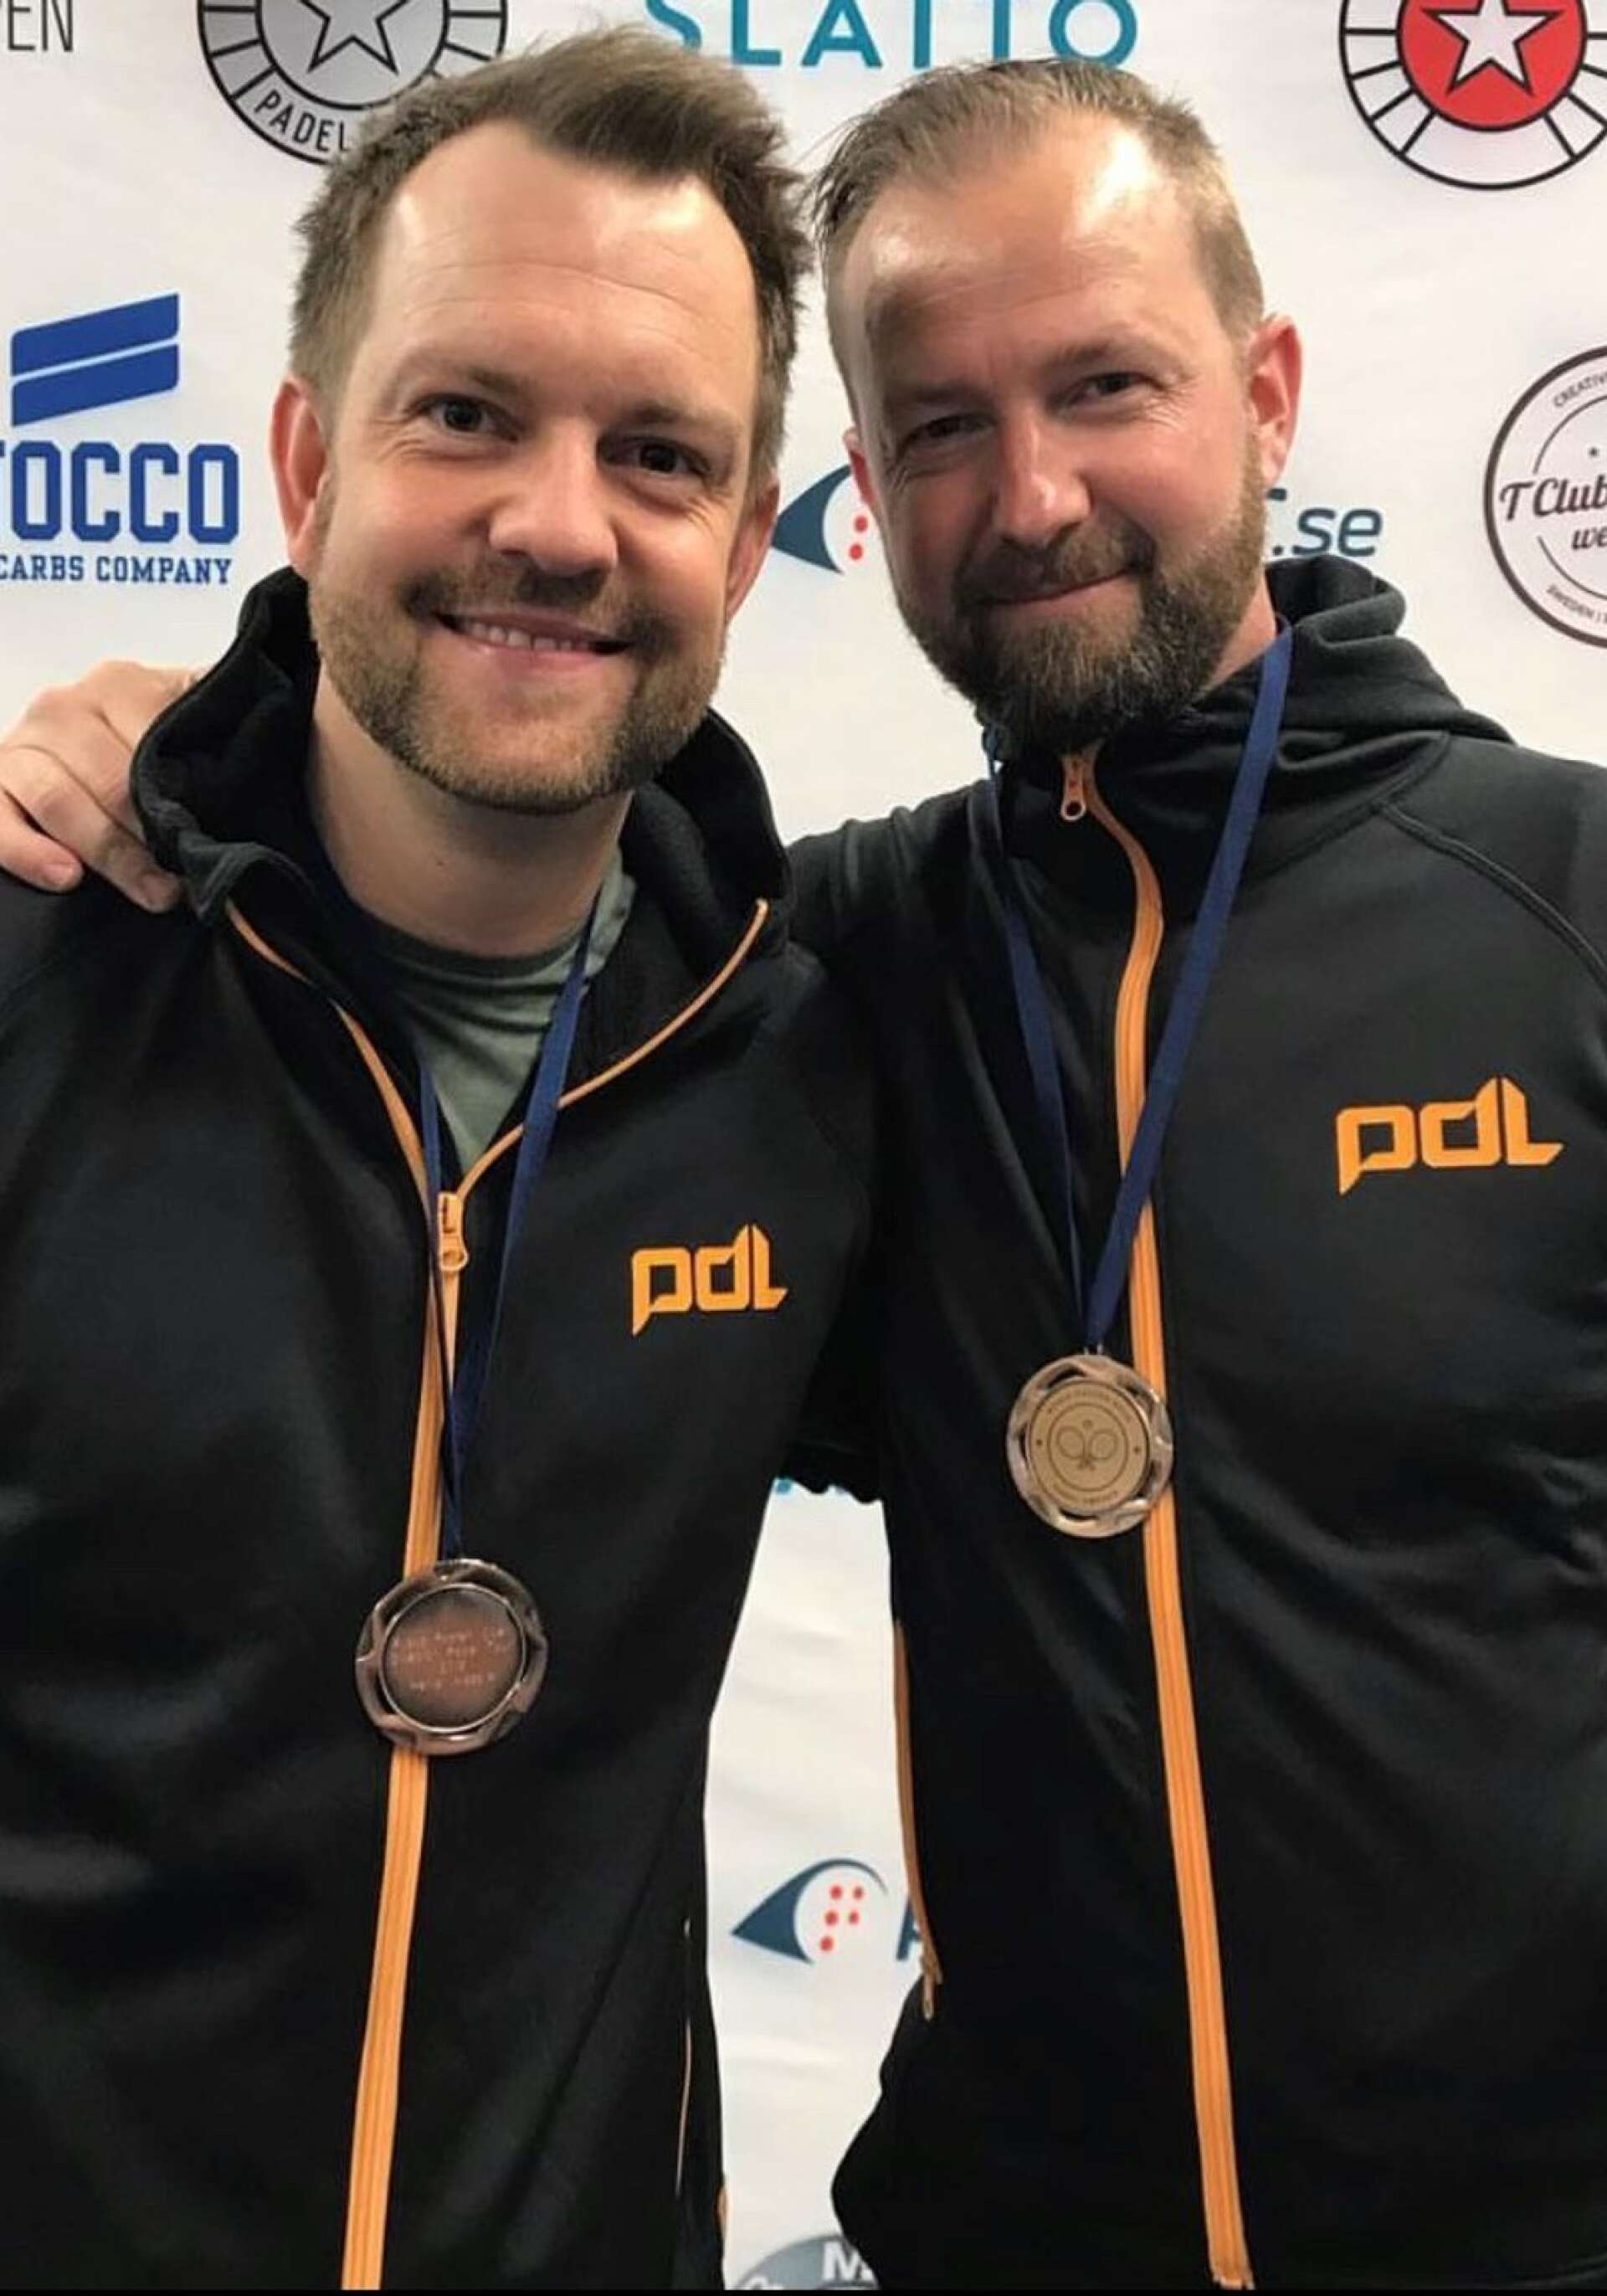 Padelduon Per Hjalmarsson och Stefan Nilsson har vunnit flera medaljer tillsammans. En av de större framgångarna var 2019 när Hjalmarsson och Nilsson var med och vann brons på lag-SM 2019 med PDL.